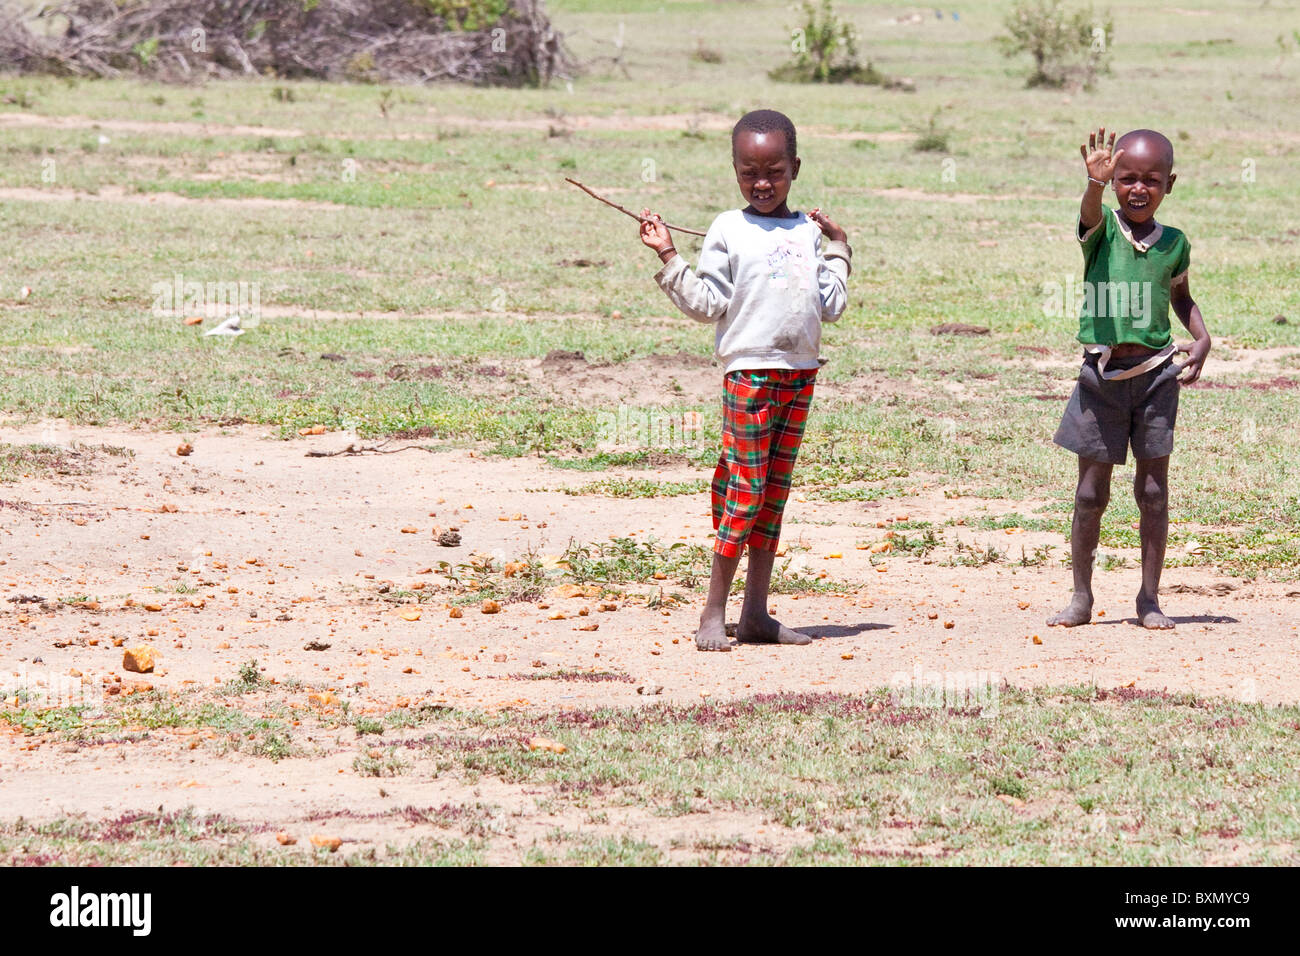 Maasai children in the Masai Mara, Kenya Stock Photo